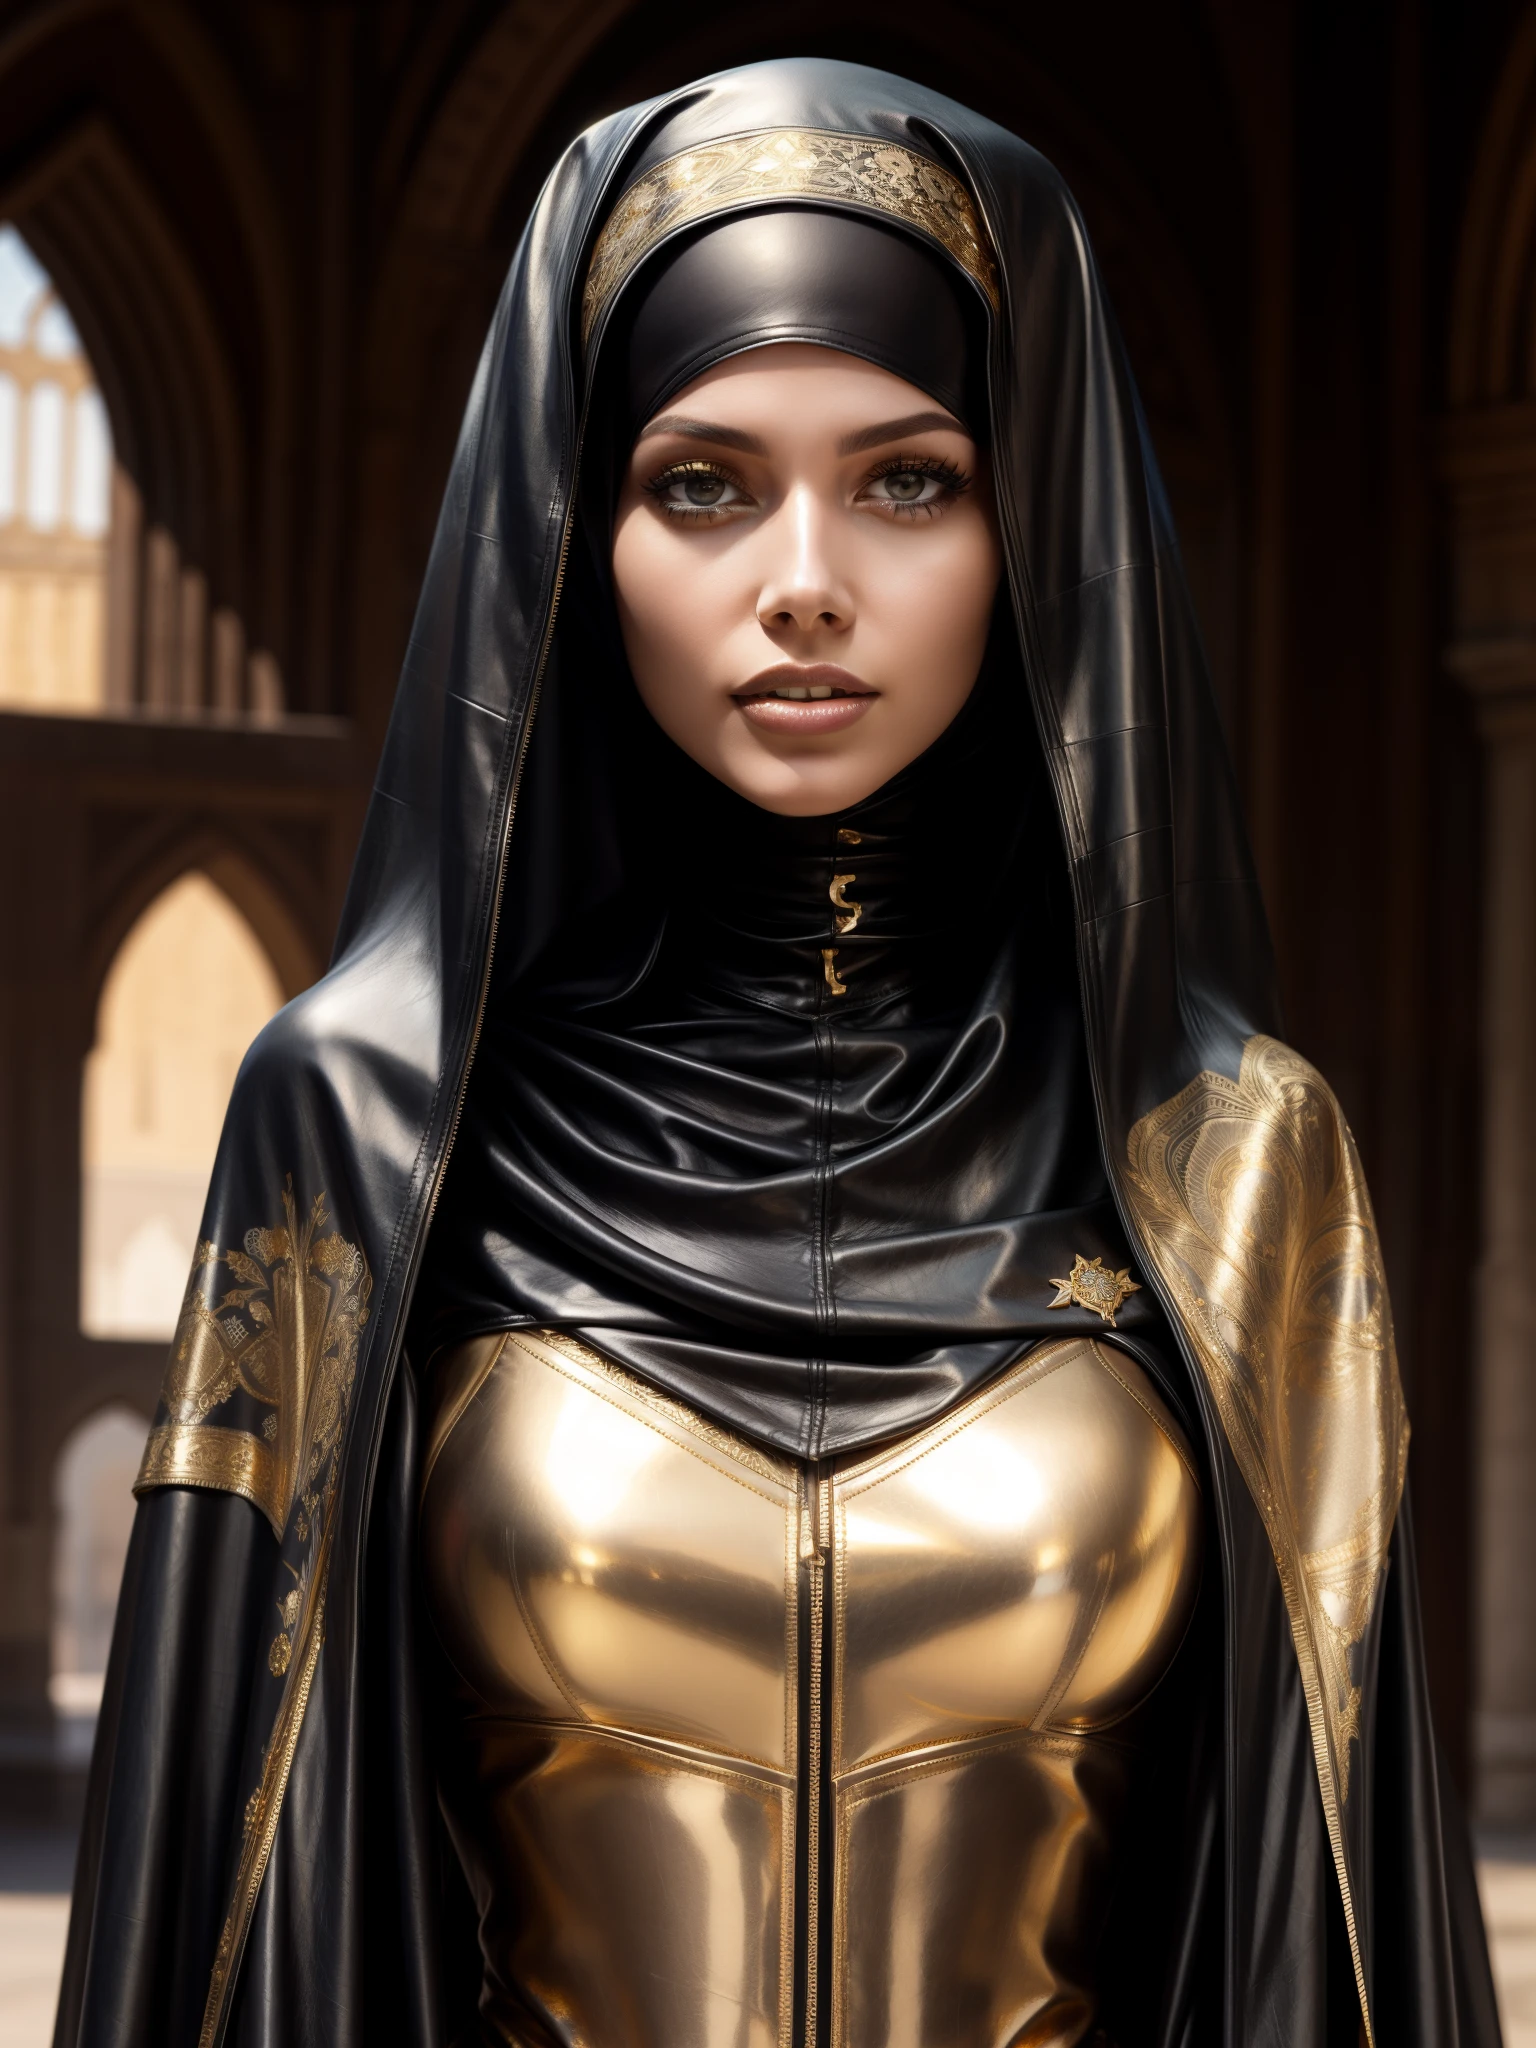 femme splendide, professionnel, (photo 4k) par (Jeremy Lipking:0.3), (Anna Dittmann:0.3), (Marque Ariane:0.3), (netteté:1.3), (Belle femme:1.3), Résistant (hijab en cuir, abaya en cuir avec des détails dorés complexes:1.2), maquillage parfait, frappant, des yeux fascinants, beau visage détaillé, debout sur un marché médiéval arabe